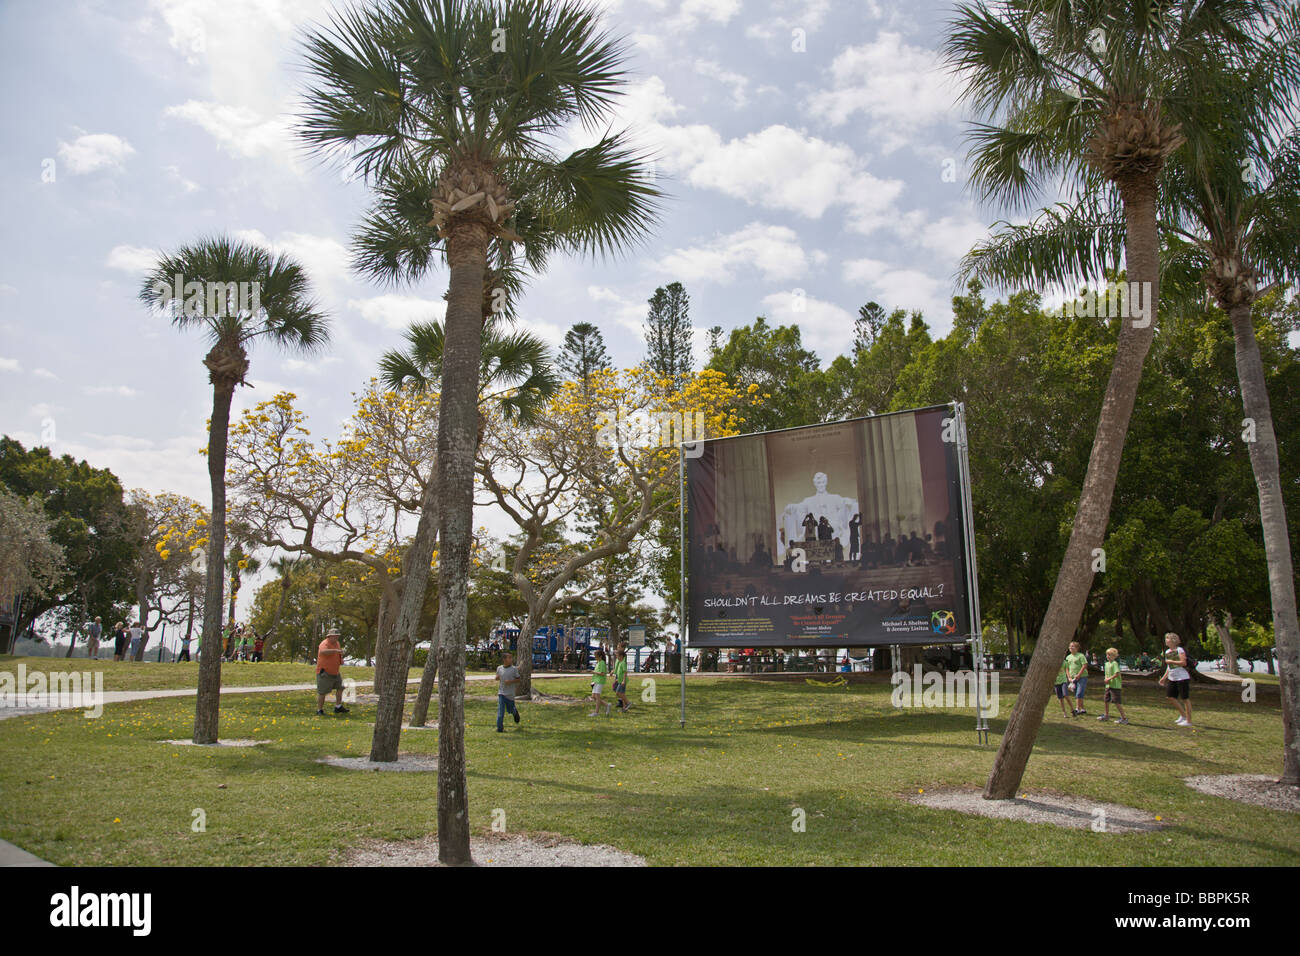 En 2009, el Sarasota Bayfront Park en Sarasota, Florida, fue el anfitrión de la 'abrazar nuestras diferencias" Exposición de arte en vallas exteriores. Foto de stock